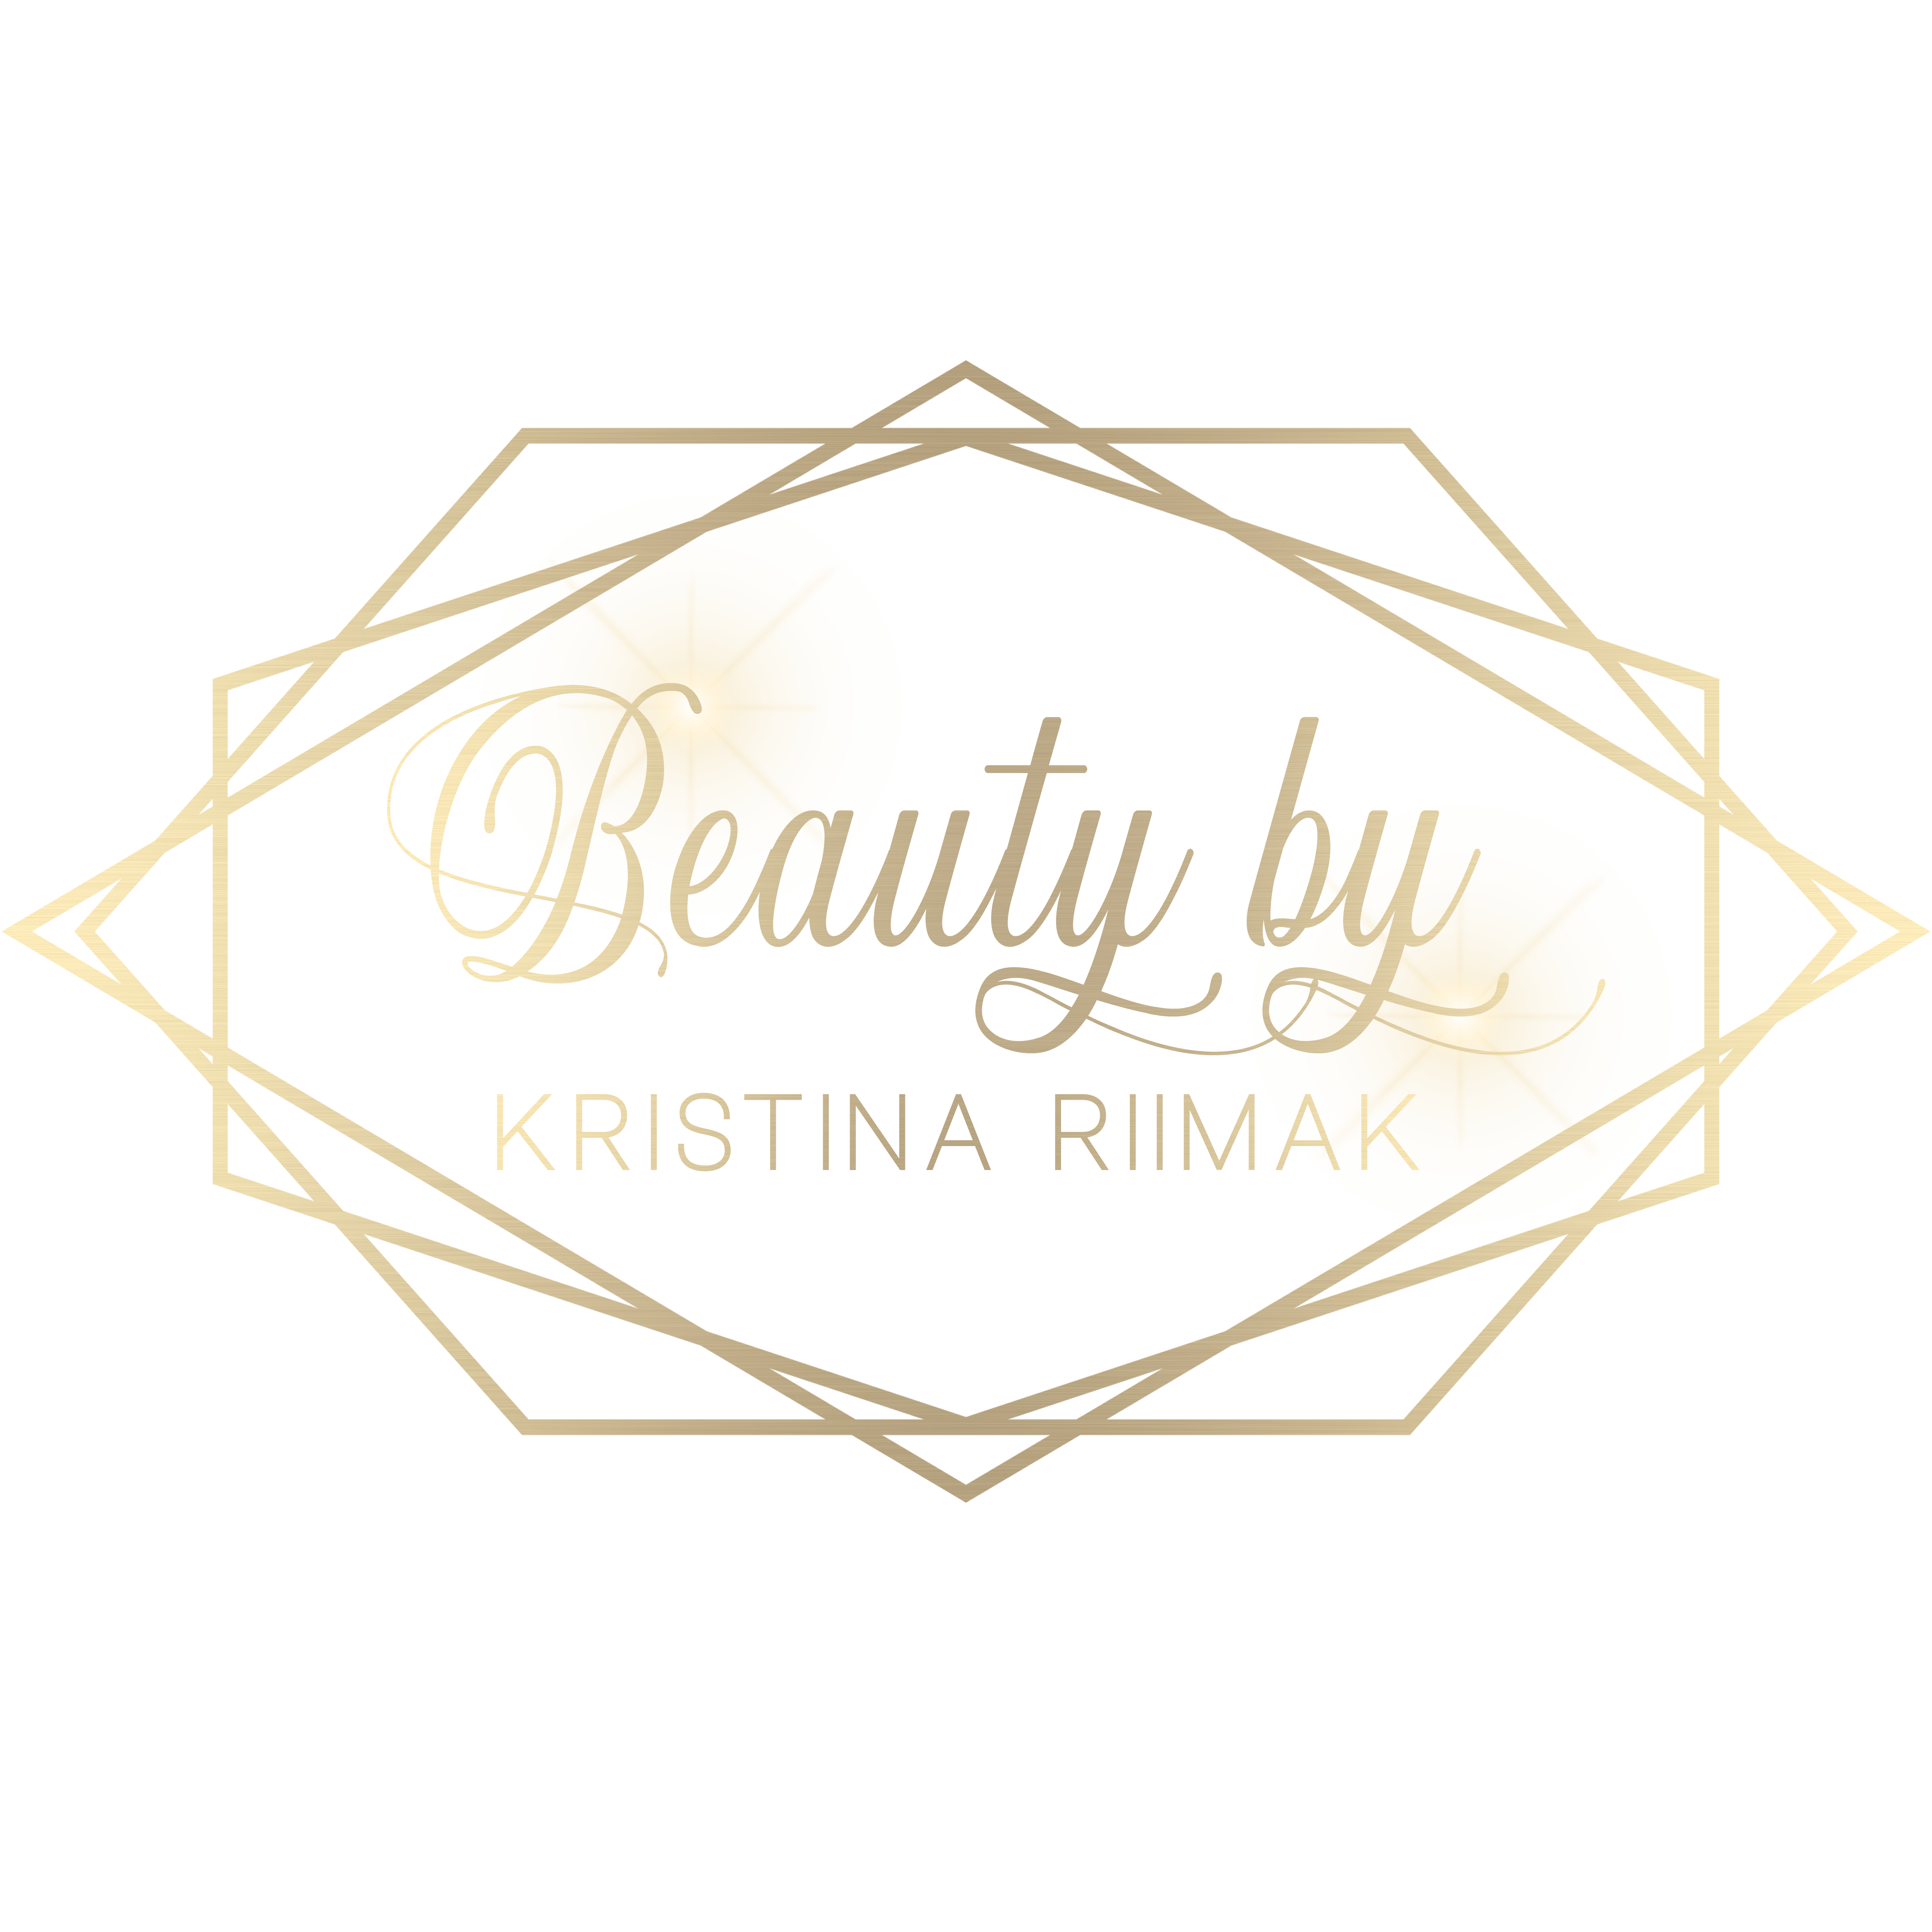 Beauty By Kristina Riimak